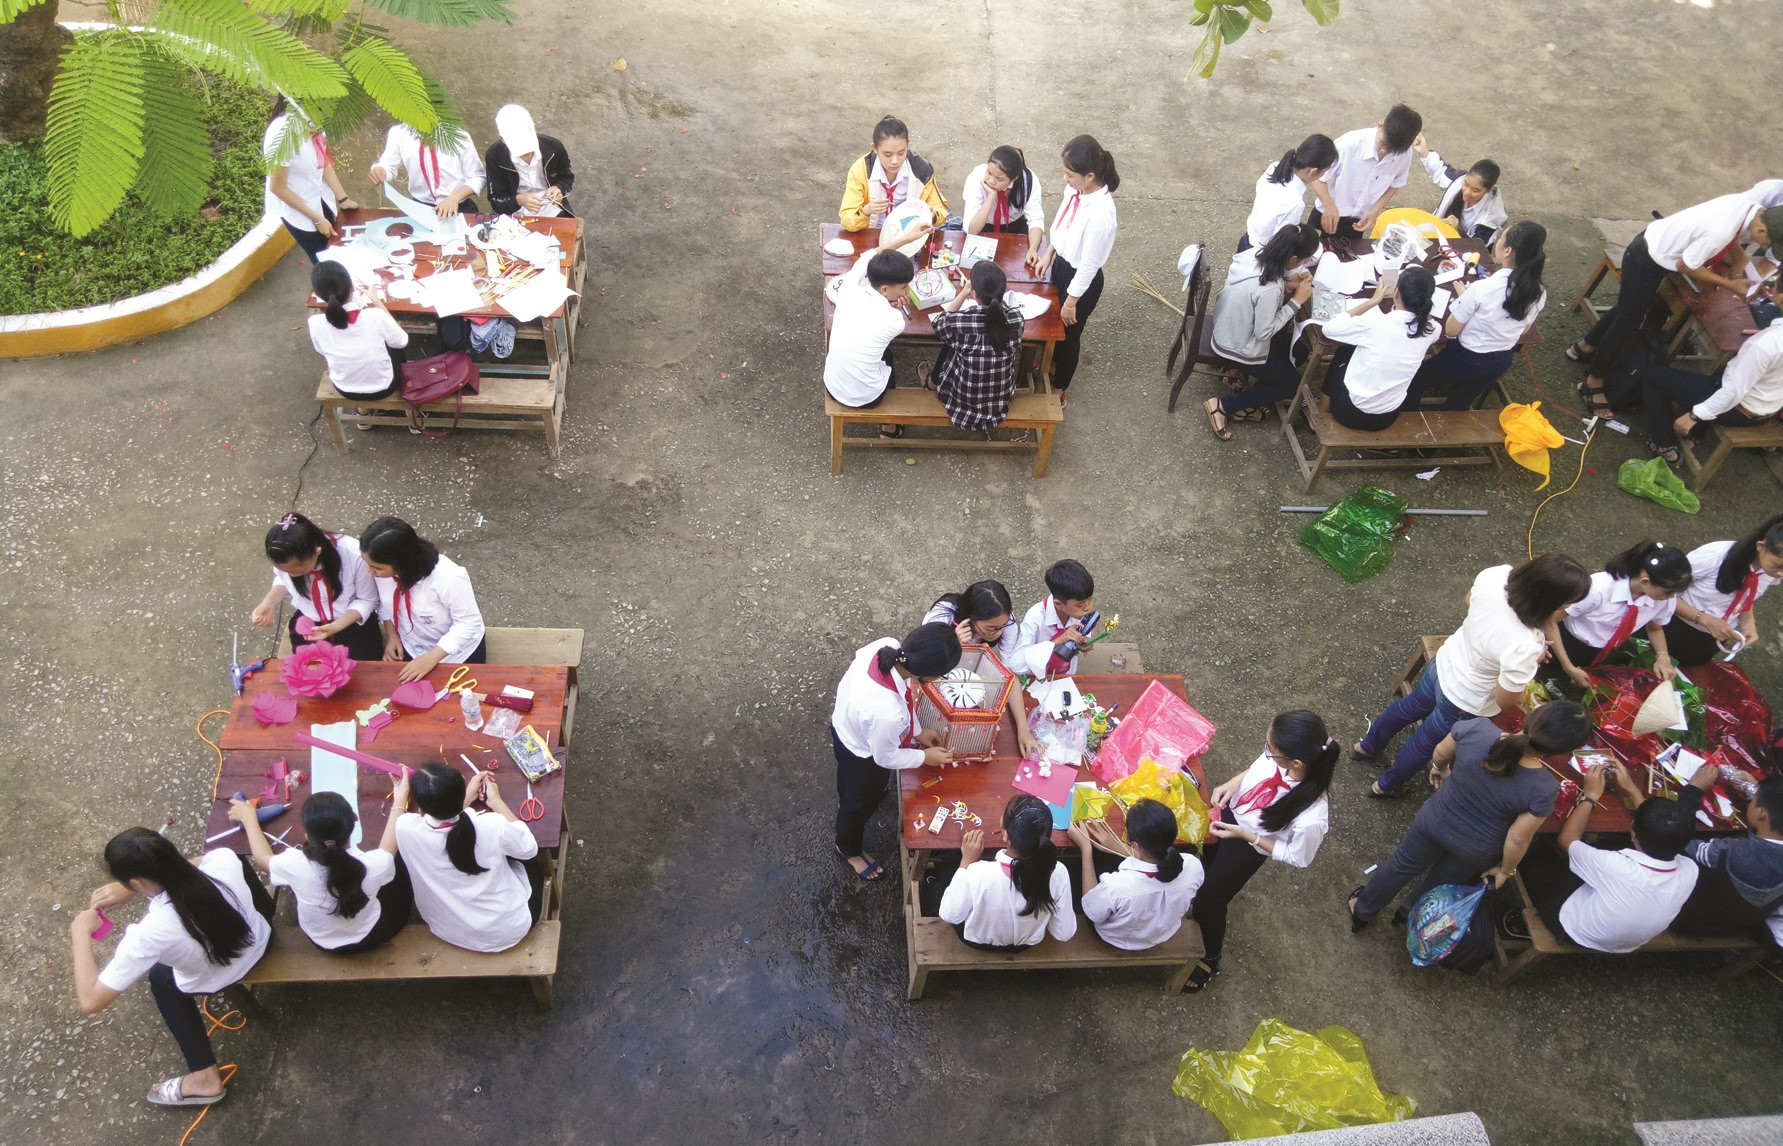 Trường THCS Nguyễn Văn Trỗi tổ chức hoạt động ngoại khóa để tăng cường giáo dục kỹ năng sống cho học sinh. Ảnh: C.N